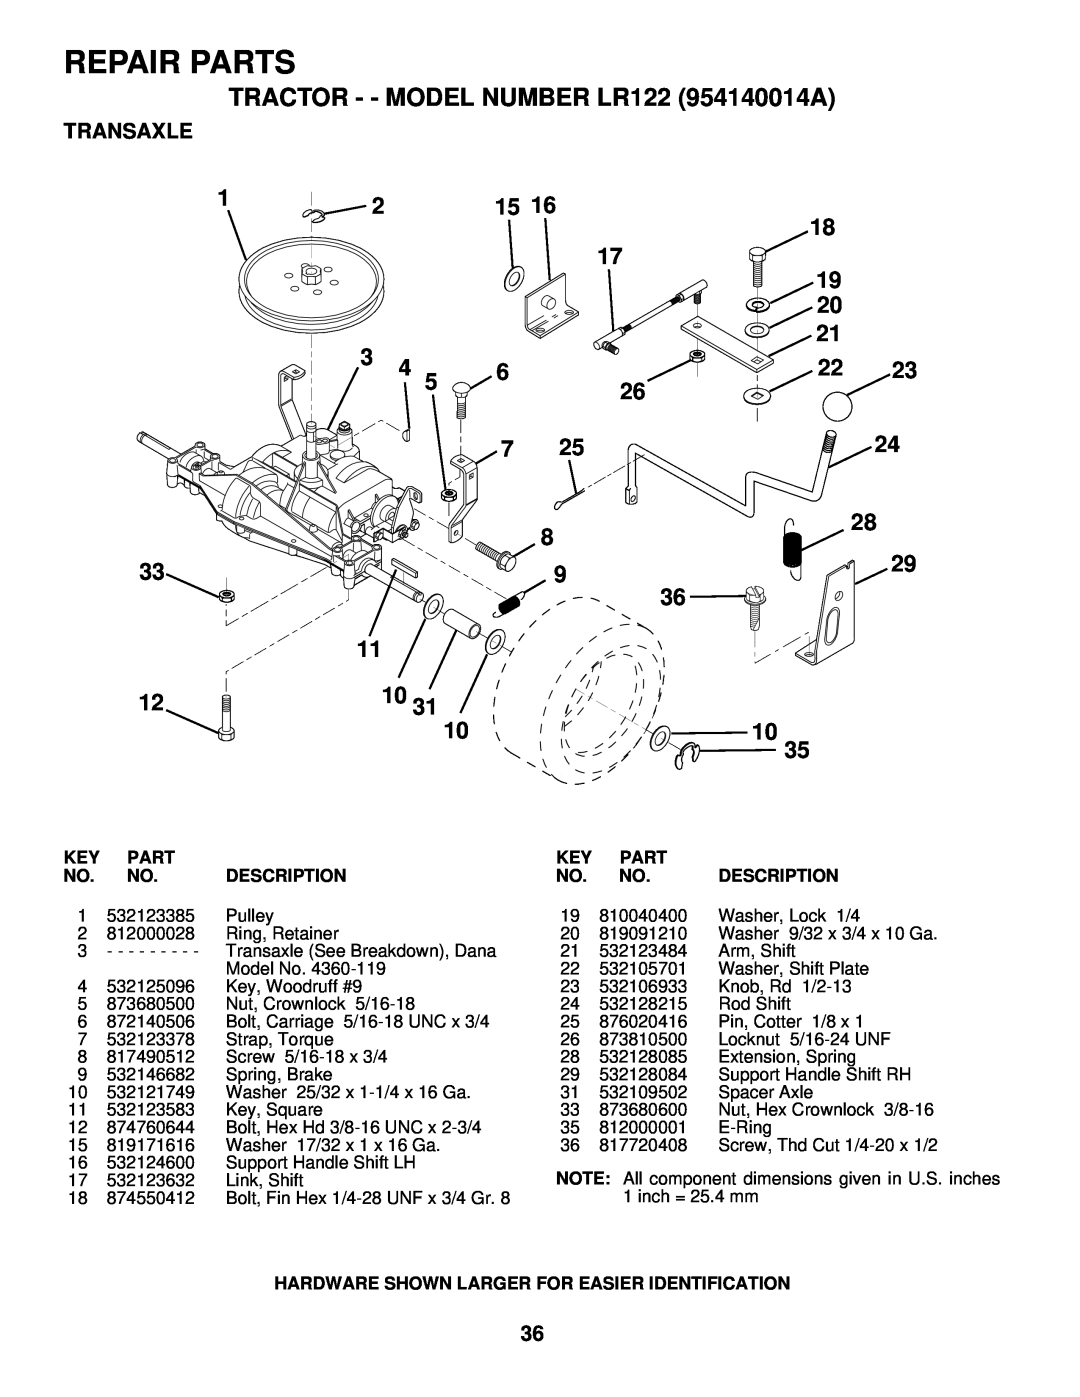 Husqvarna owner manual Transaxle, Repair Parts, TRACTOR - - MODEL NUMBER LR122 954140014A, Description 